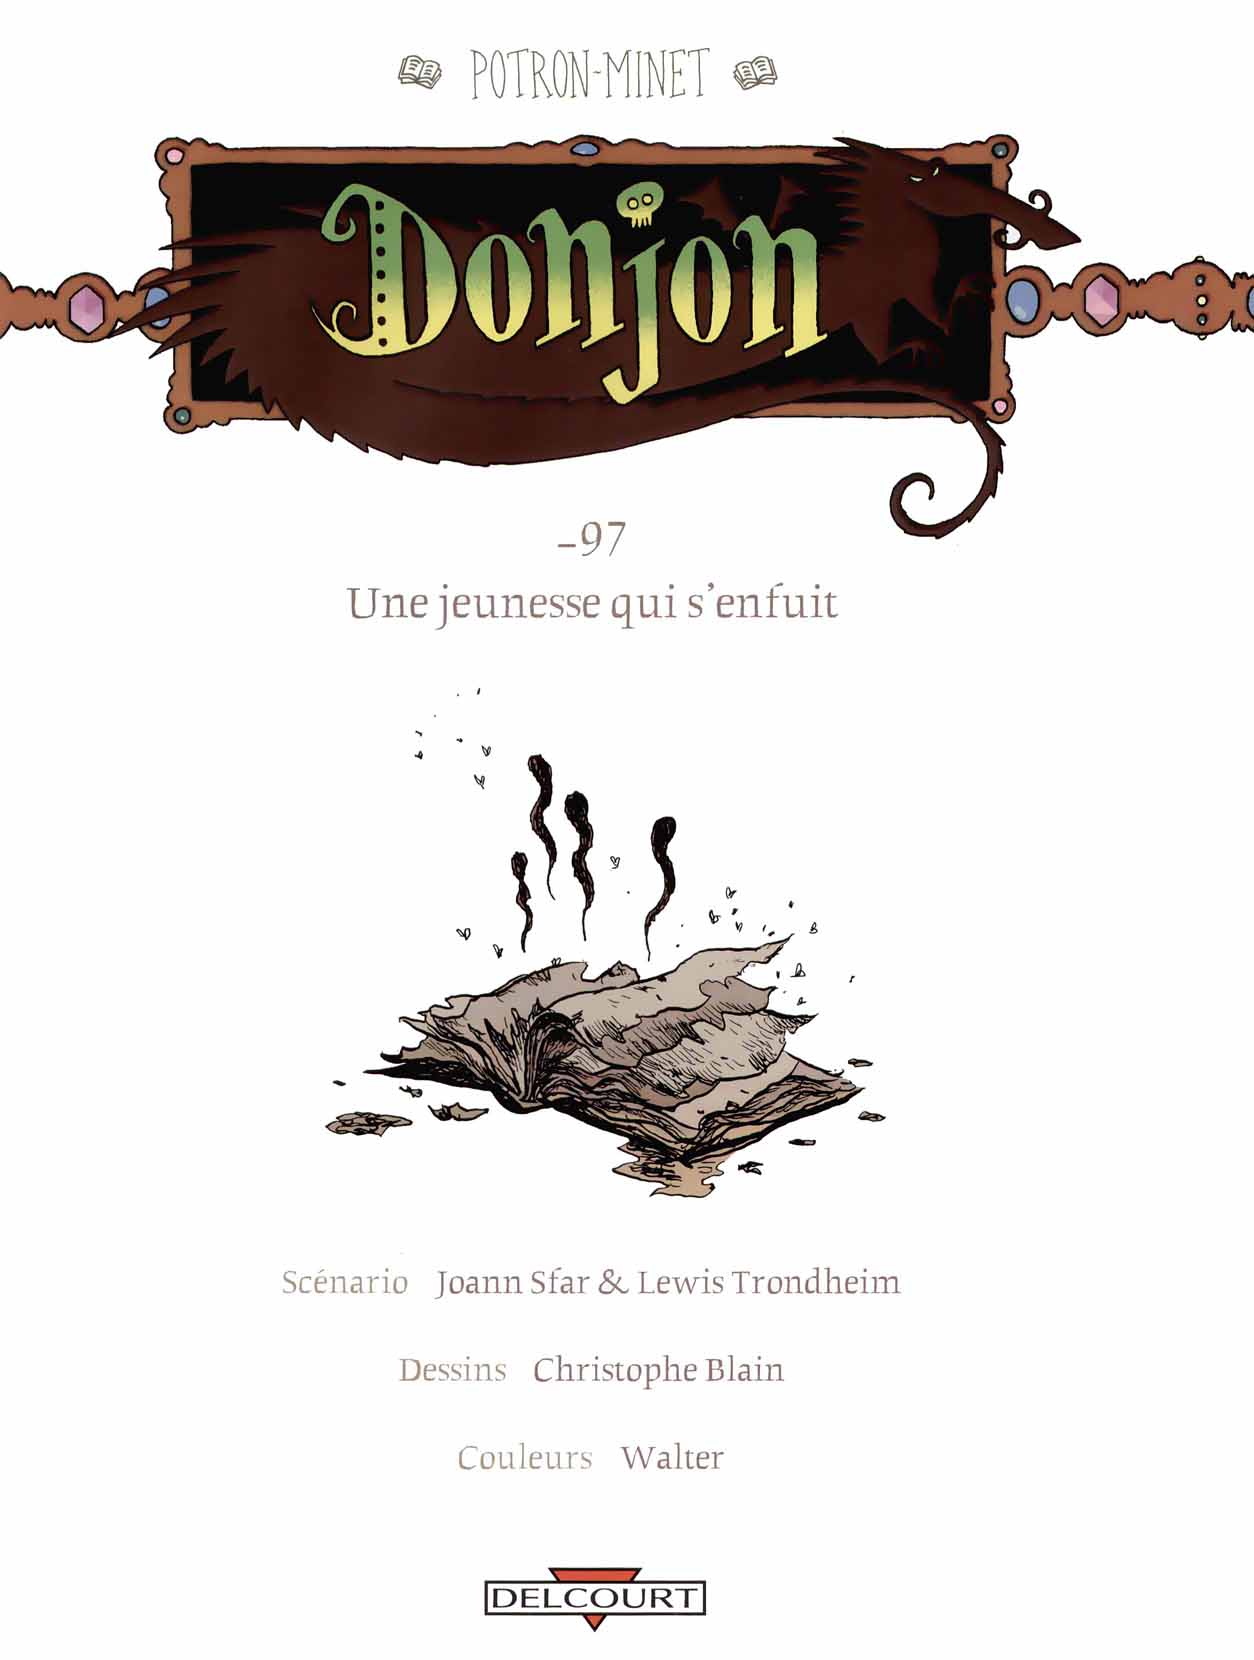 Donjon Potron-Minet - Volume 3 - Une jeunesse qui senfuit numero d'image 3